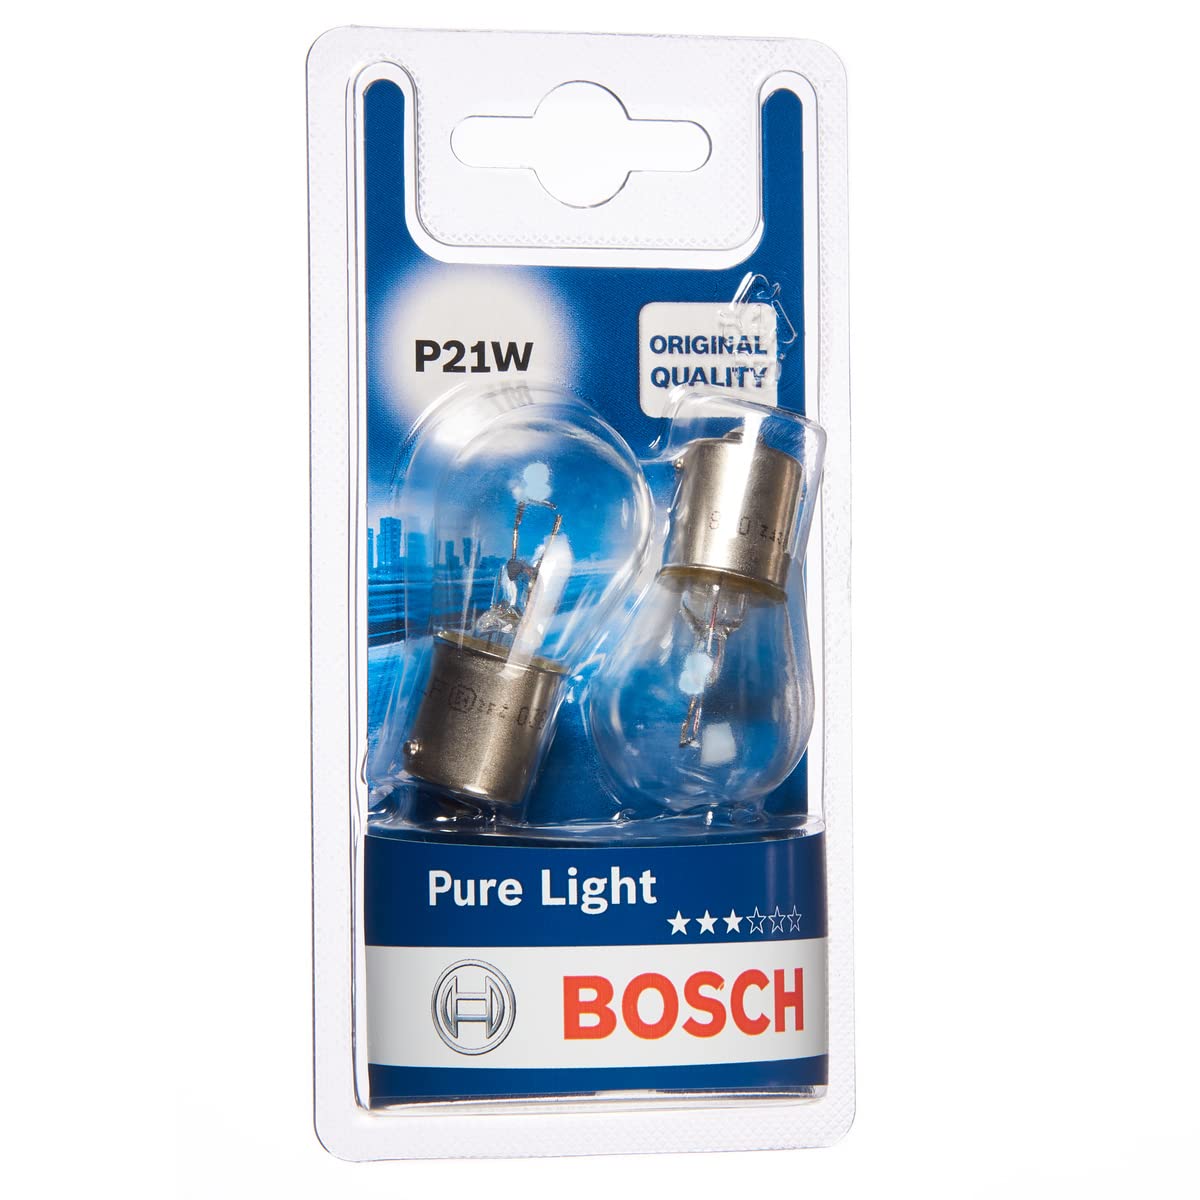 Bosch P21W (382) Pure Light Car Light Bulbs - 12 V 21 W BA15s - 2 Bulbs - Ammpoure Wellbeing